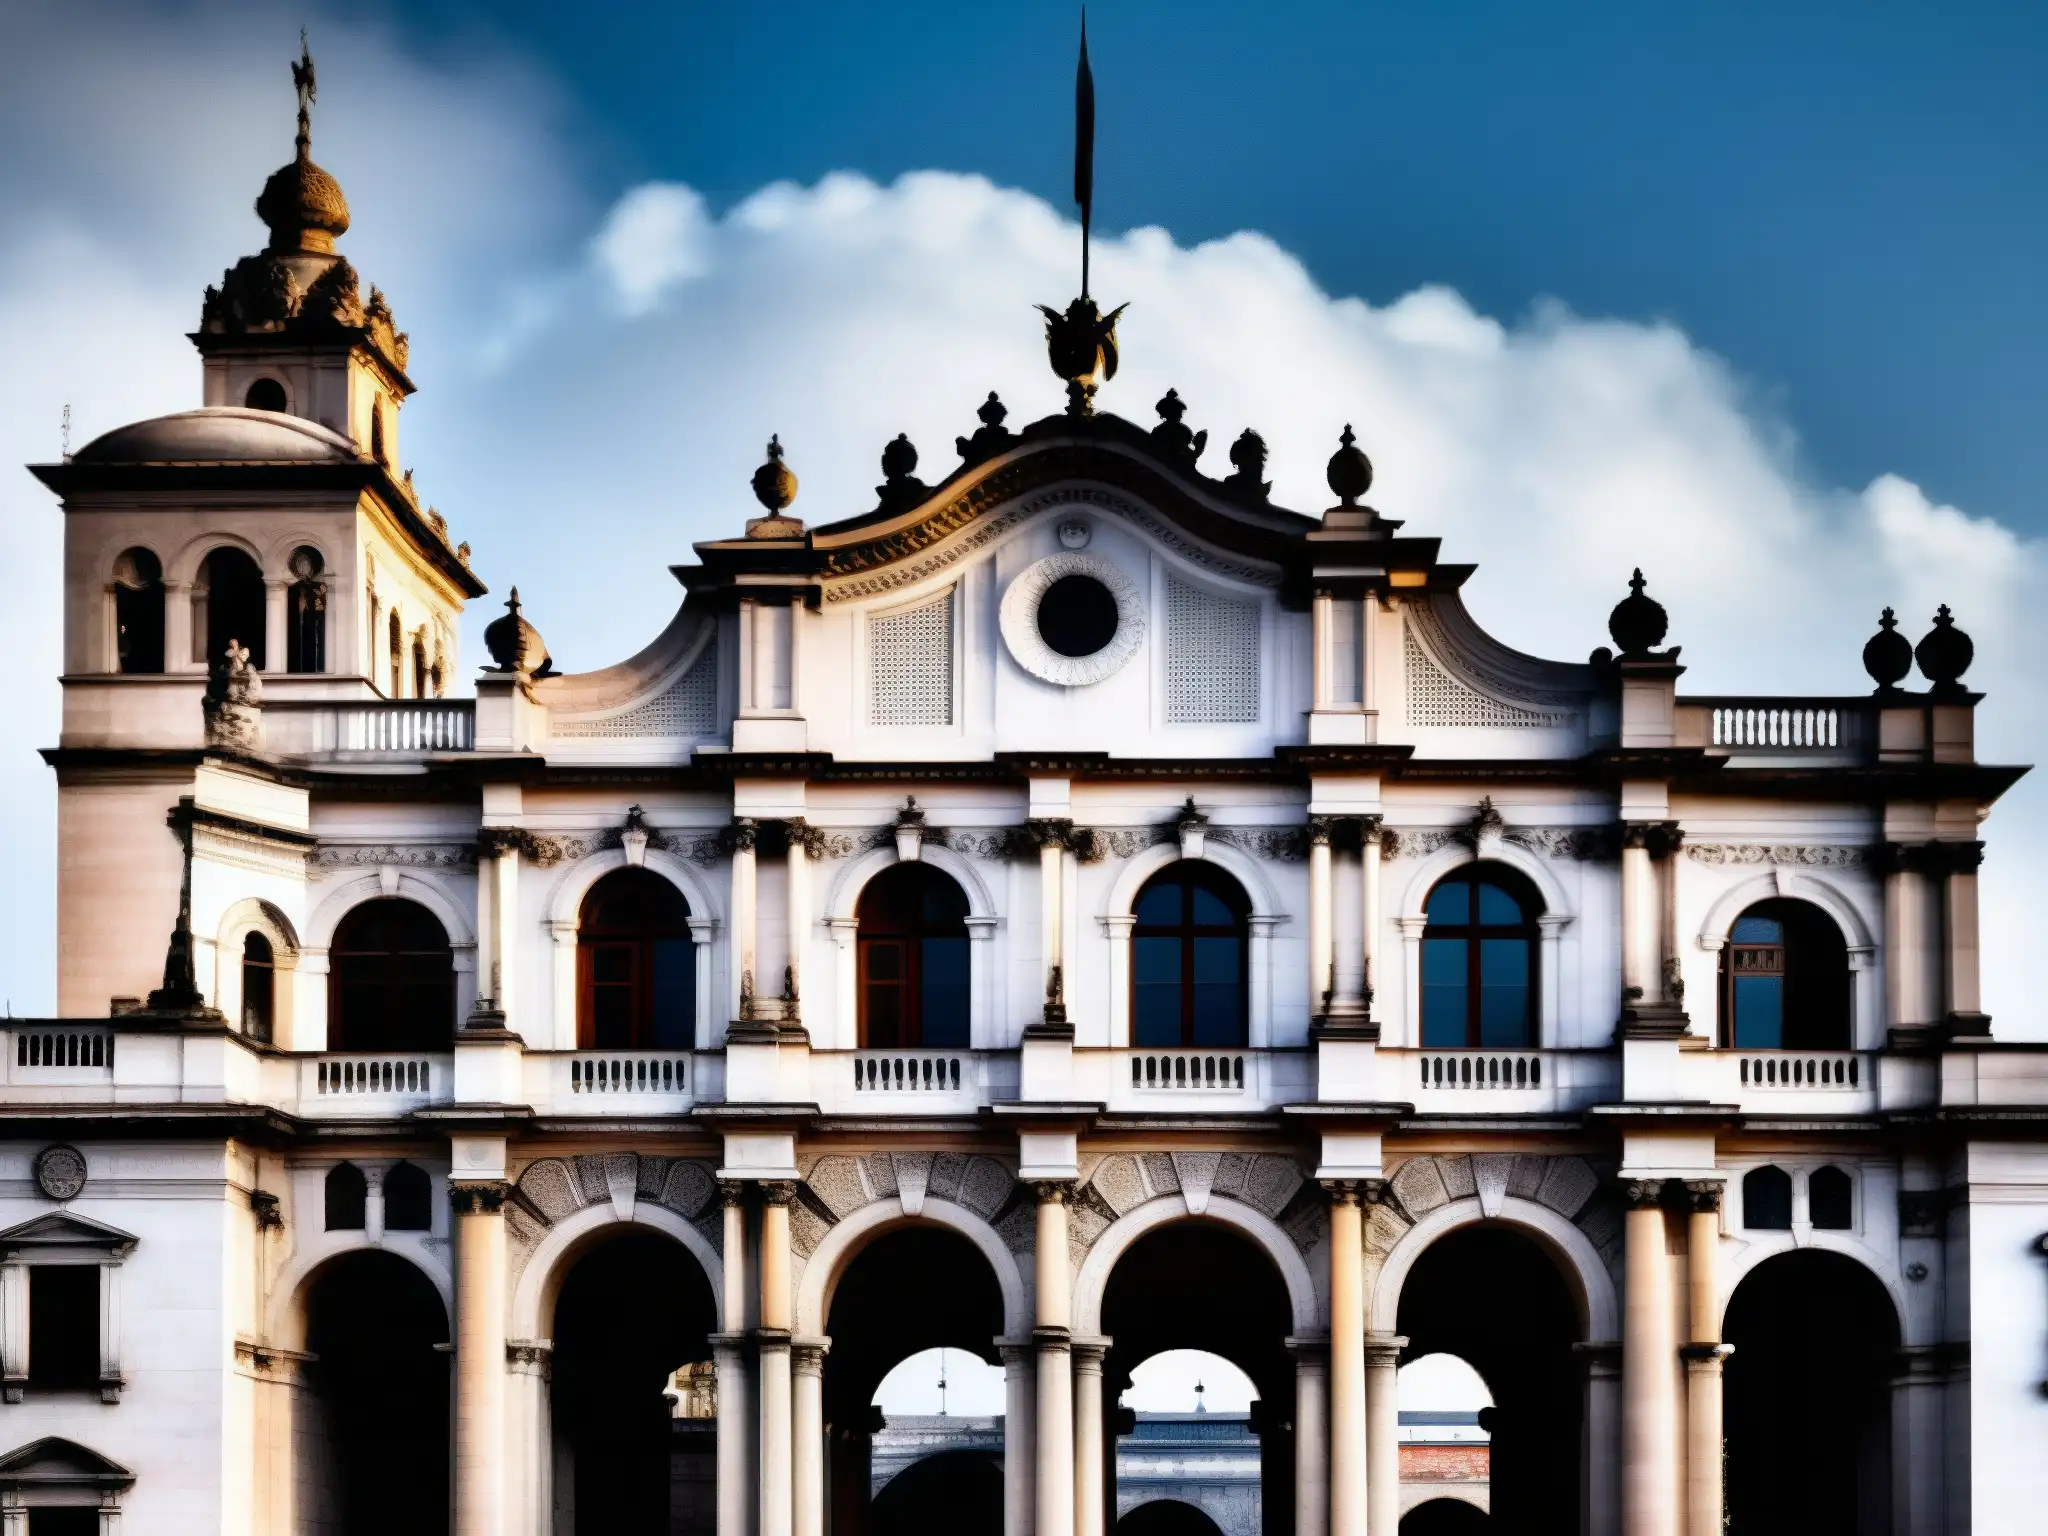 El imponente Palacio de Lecumberri, con su aura fantasmal, contrasta con el skyline moderno de la ciudad